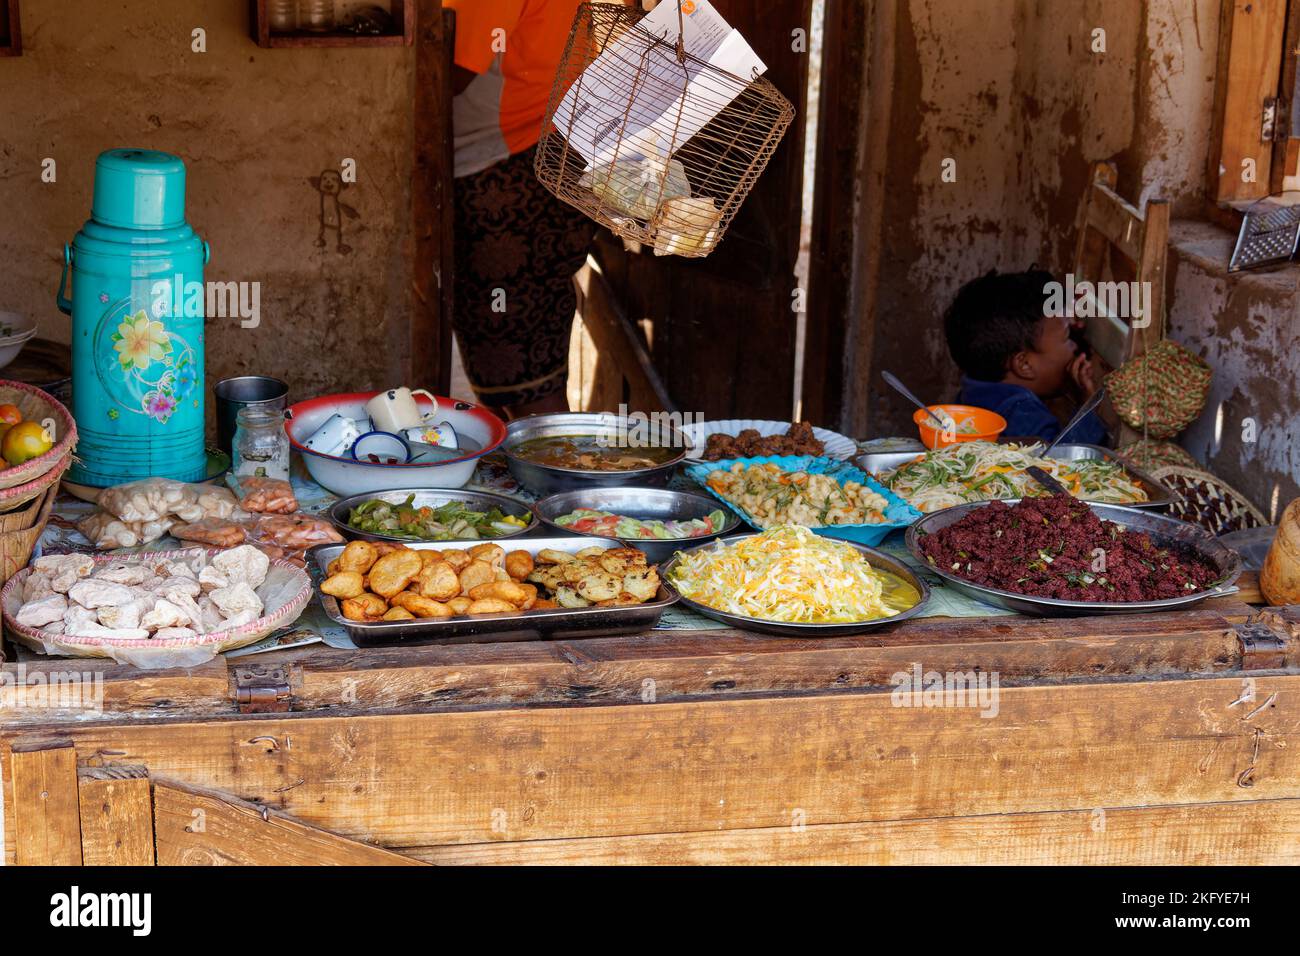 Street food stall dans le village malgache à Madagascar, fast food shop avec repas. Vue typique de la rue à Madagascar. Banque D'Images